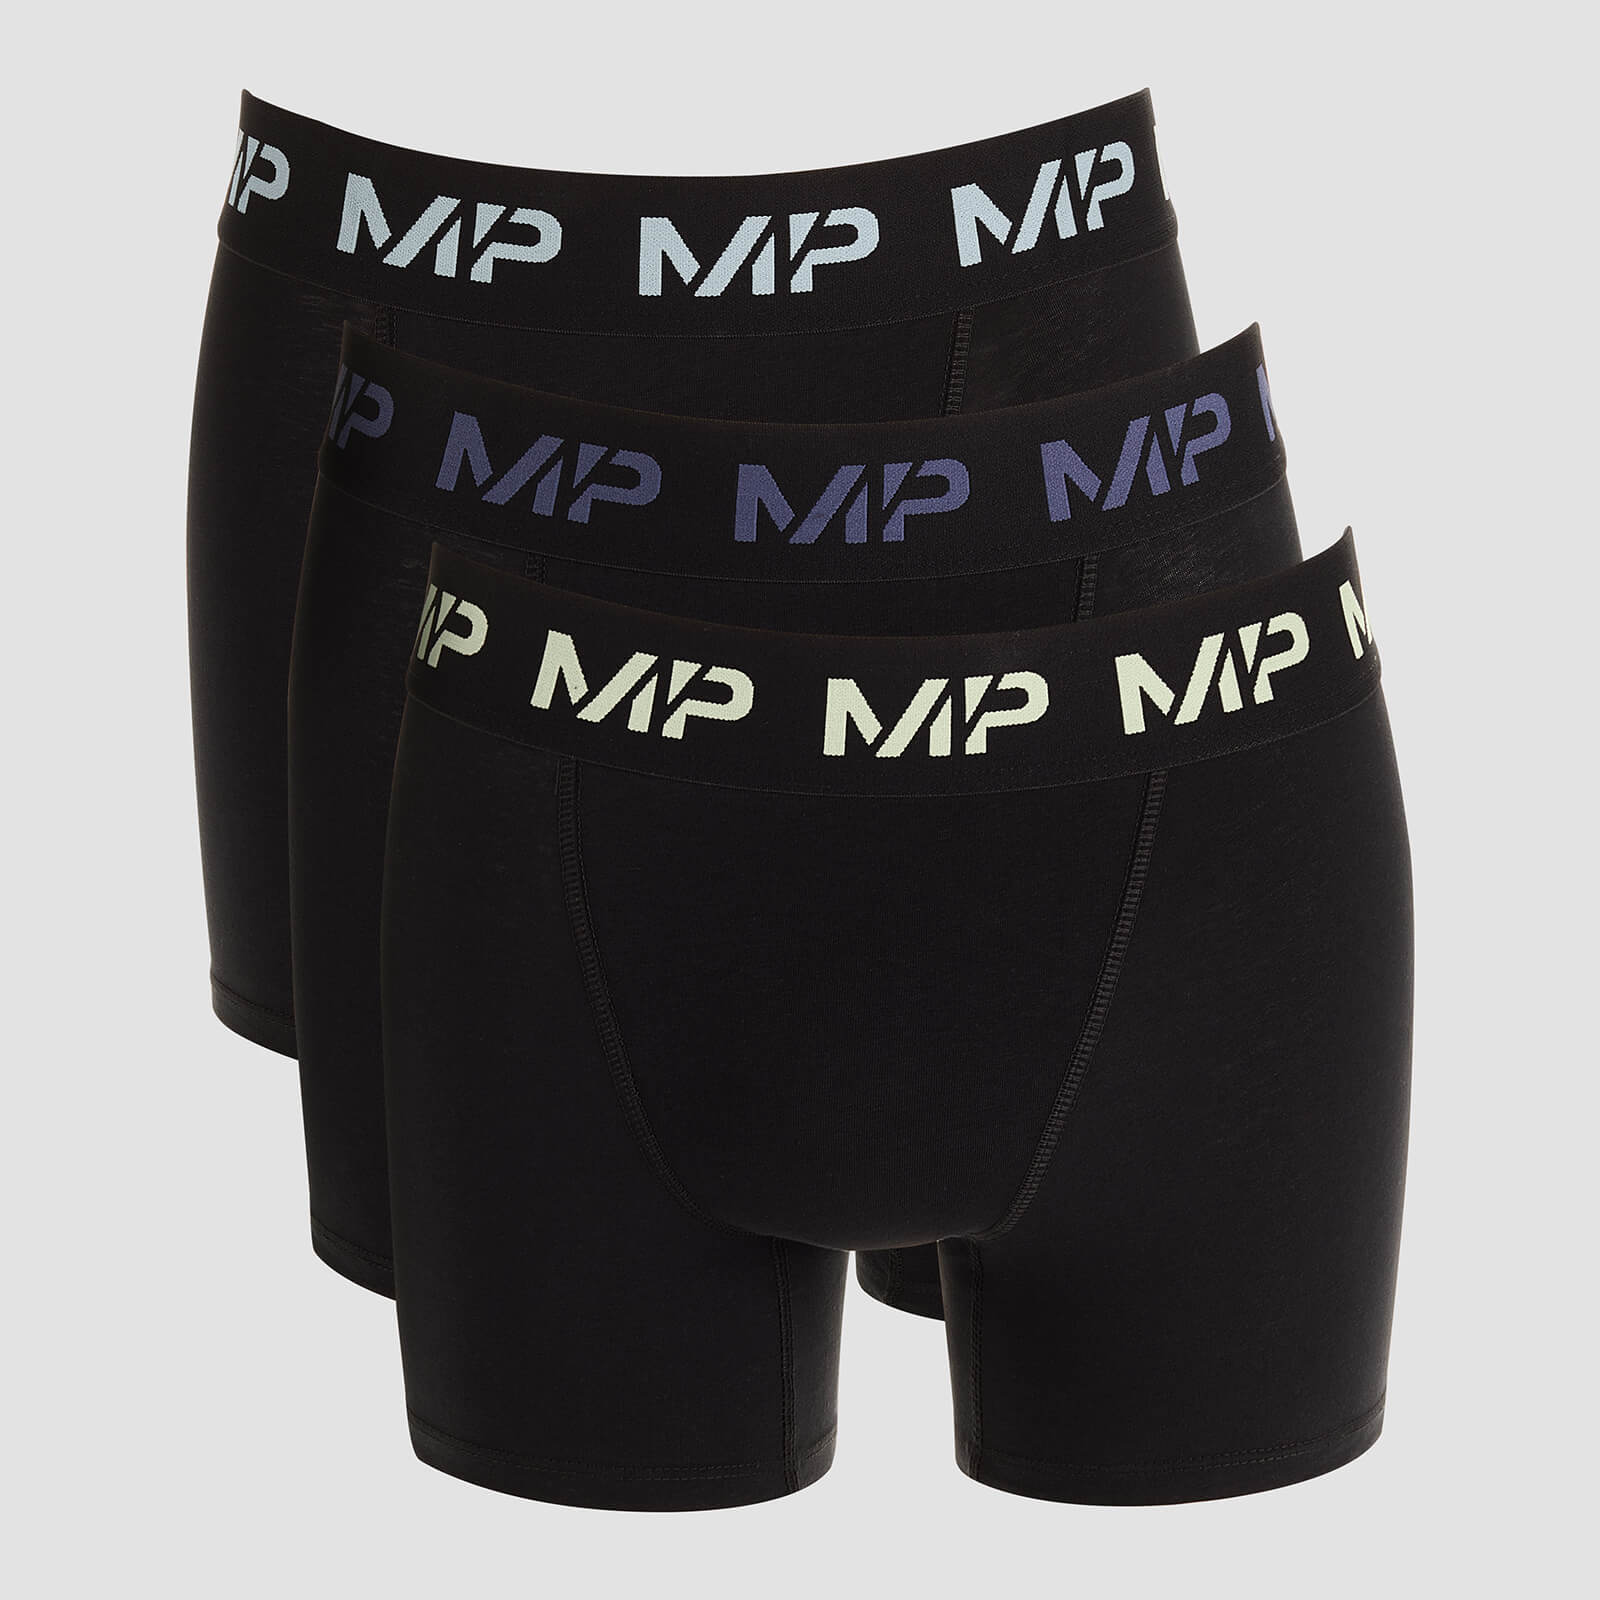 Boxers à logo coloré MP pour hommes (lot de 3) – Noir/Vert givré/Bleu acier/Bleu glacé - XXL